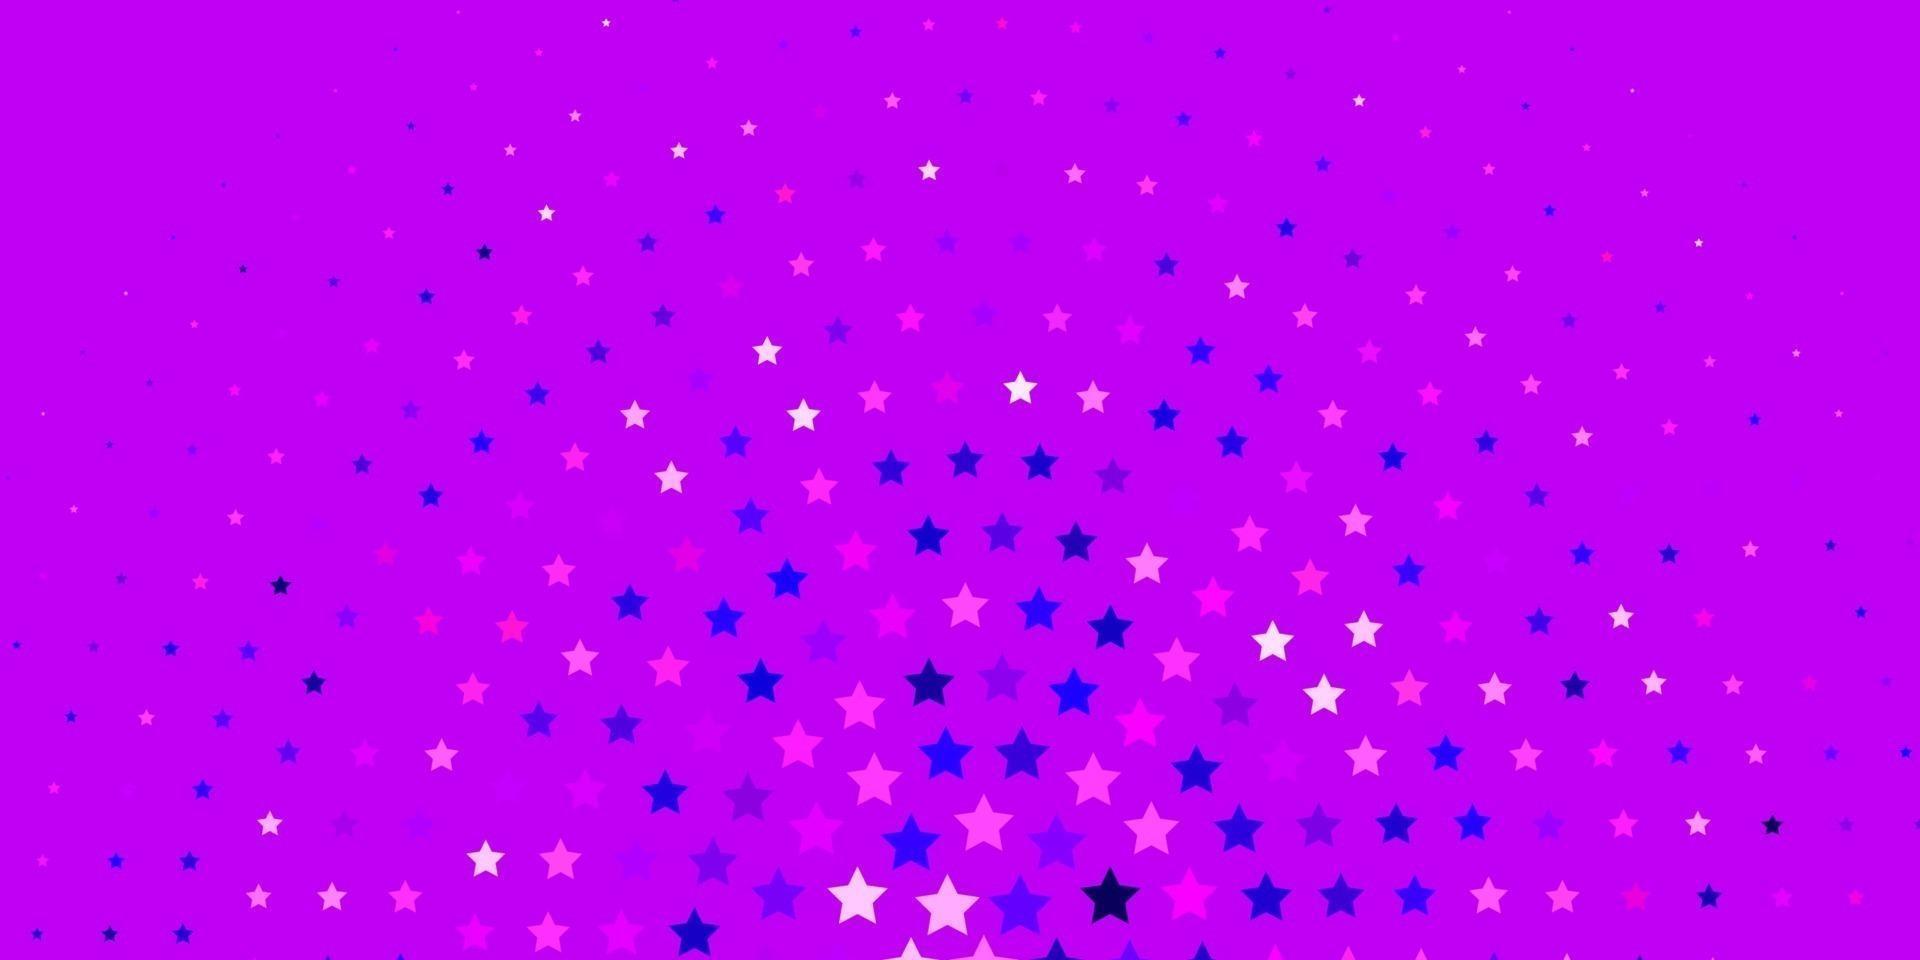 ljuslila, rosa vektorstruktur med vackra stjärnor. vektor